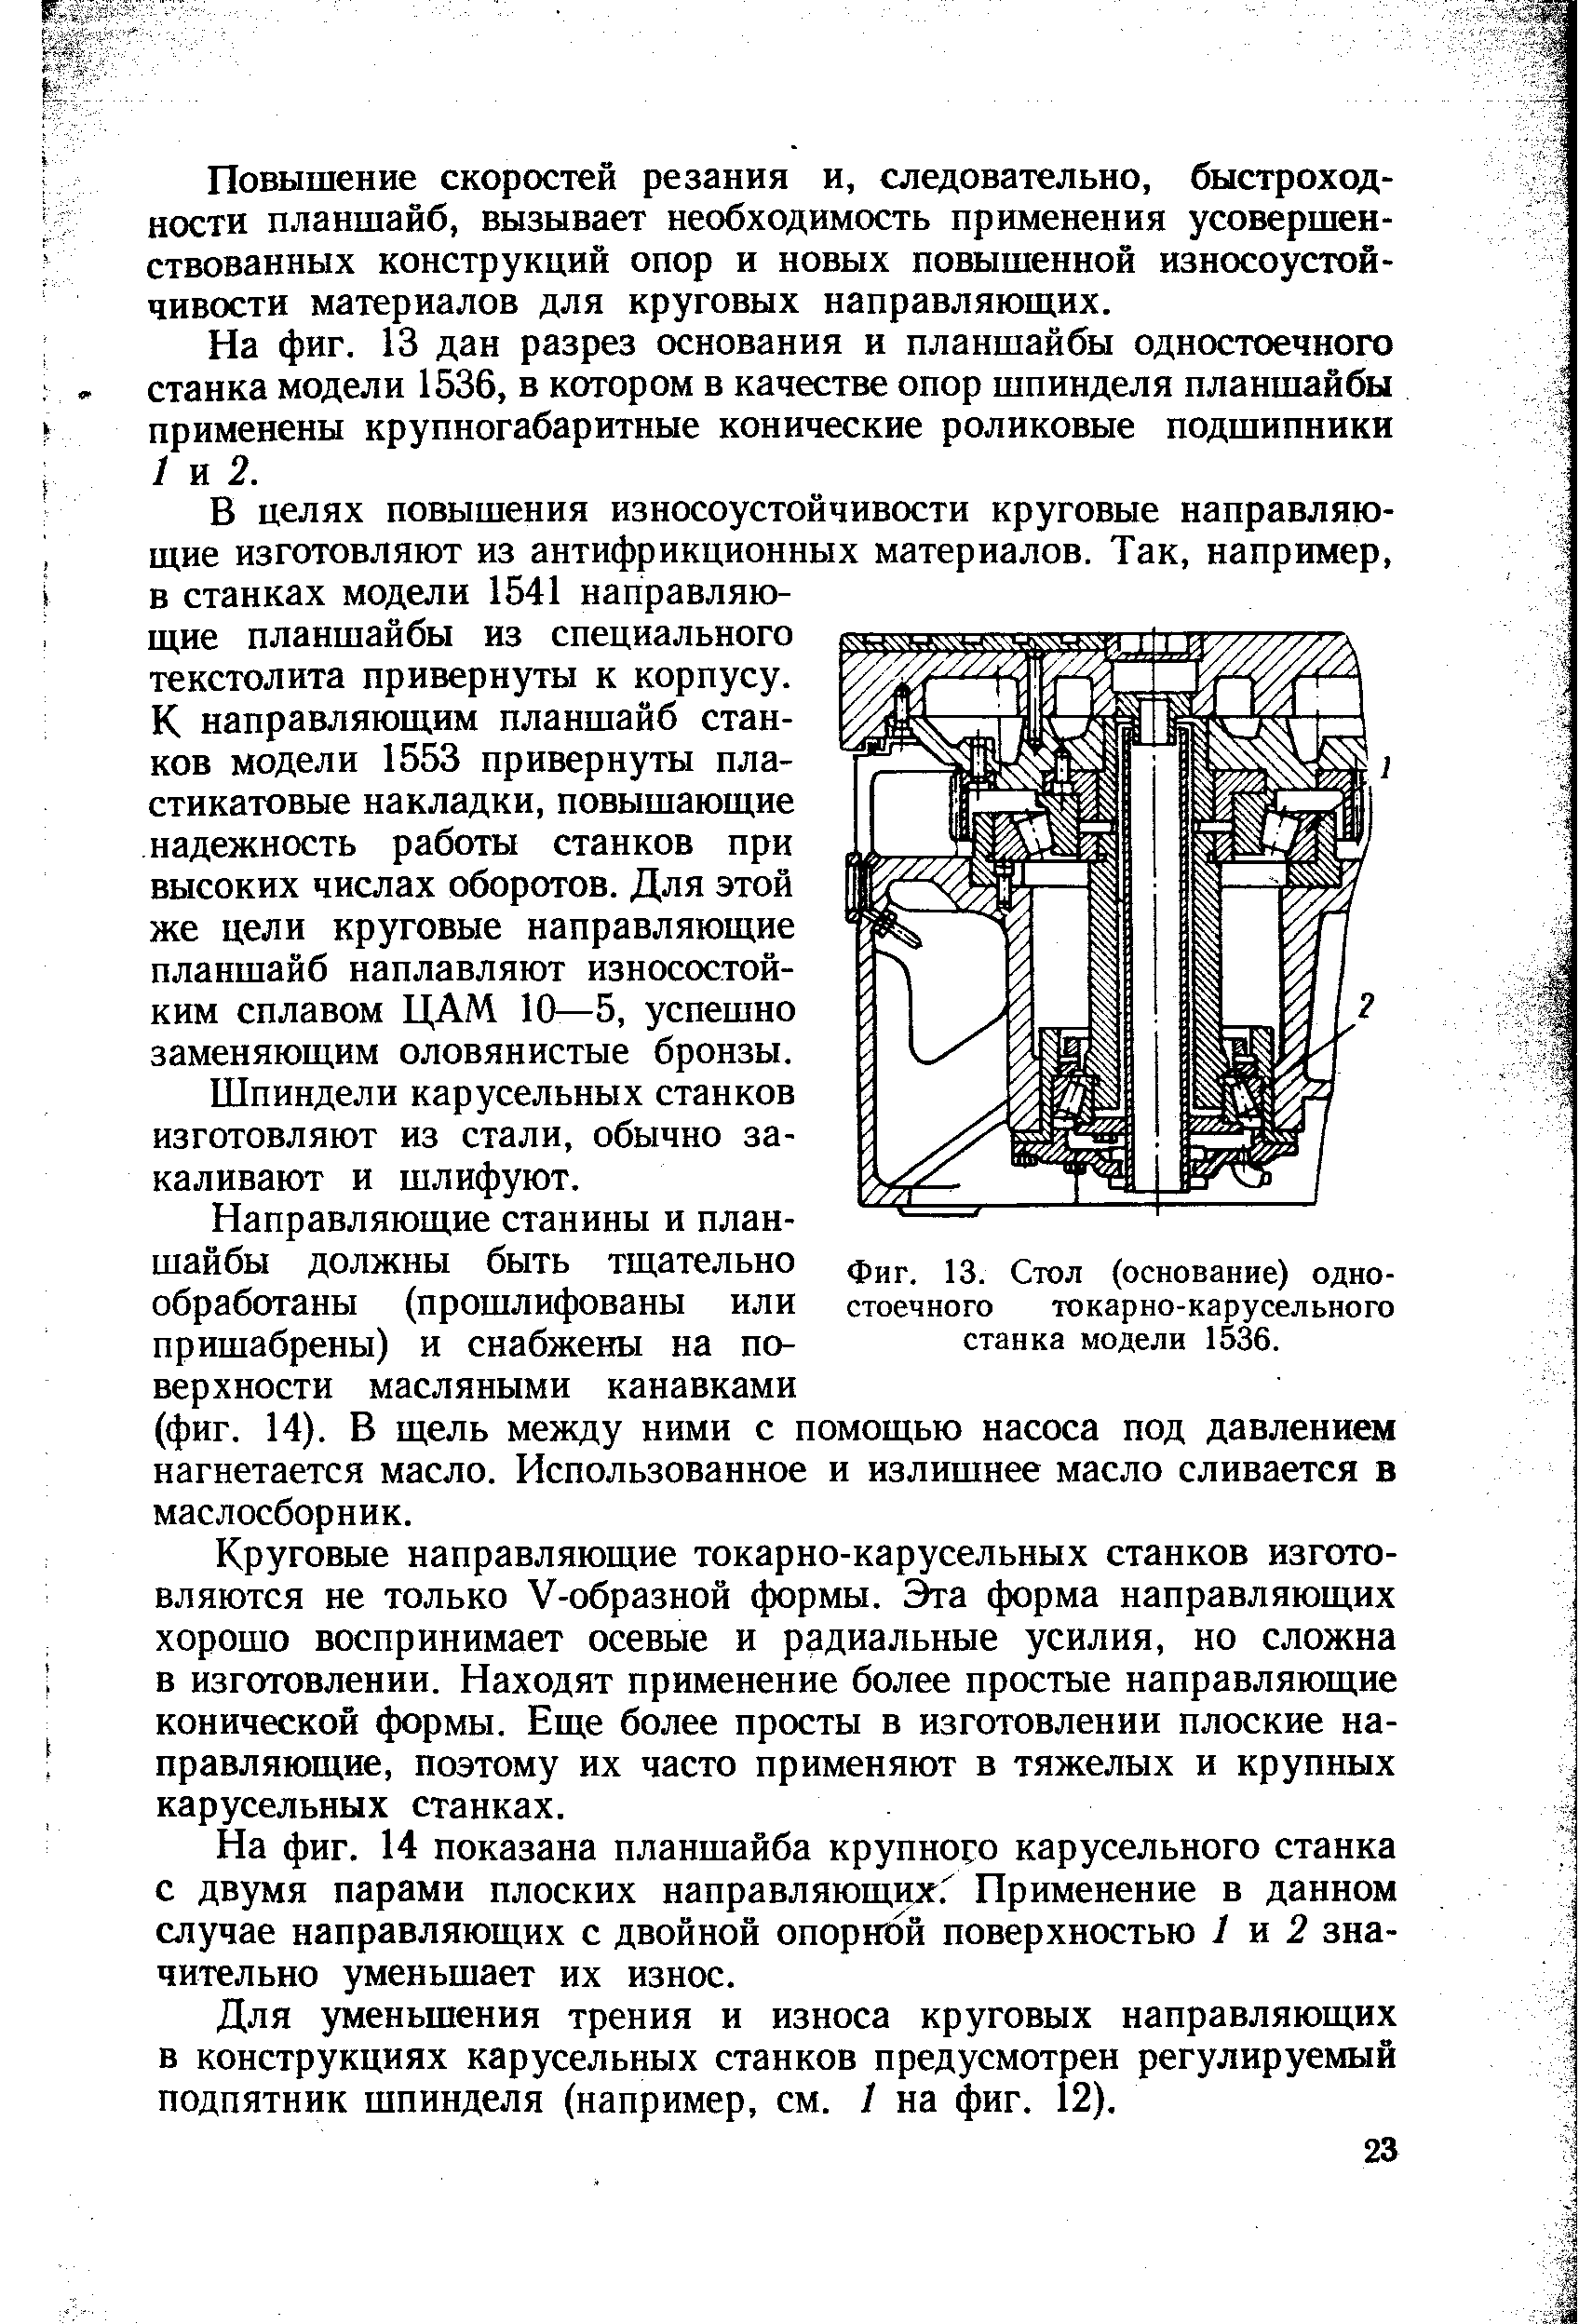 Фиг. 13. Стол (основание) одностоечного токарно-карусельного станка модели 1536.
